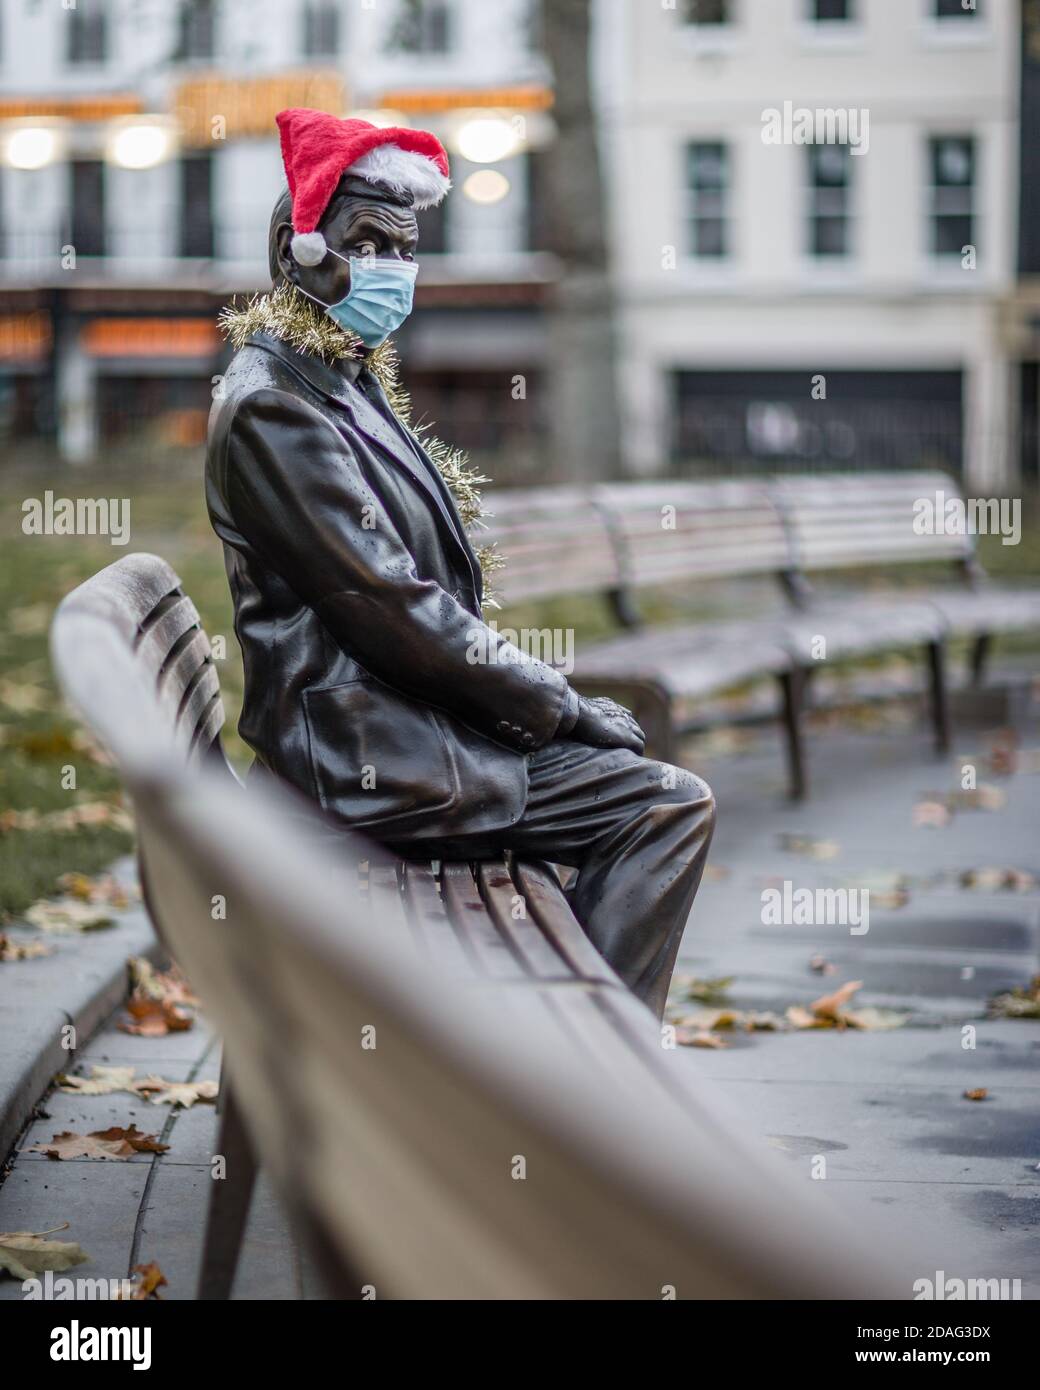 Ein trauriger und einsamer Herr Bean, der eine Maske und einen weihnachtshut trägt, veranschaulicht die Zeiten, in denen wir leben. Stockfoto